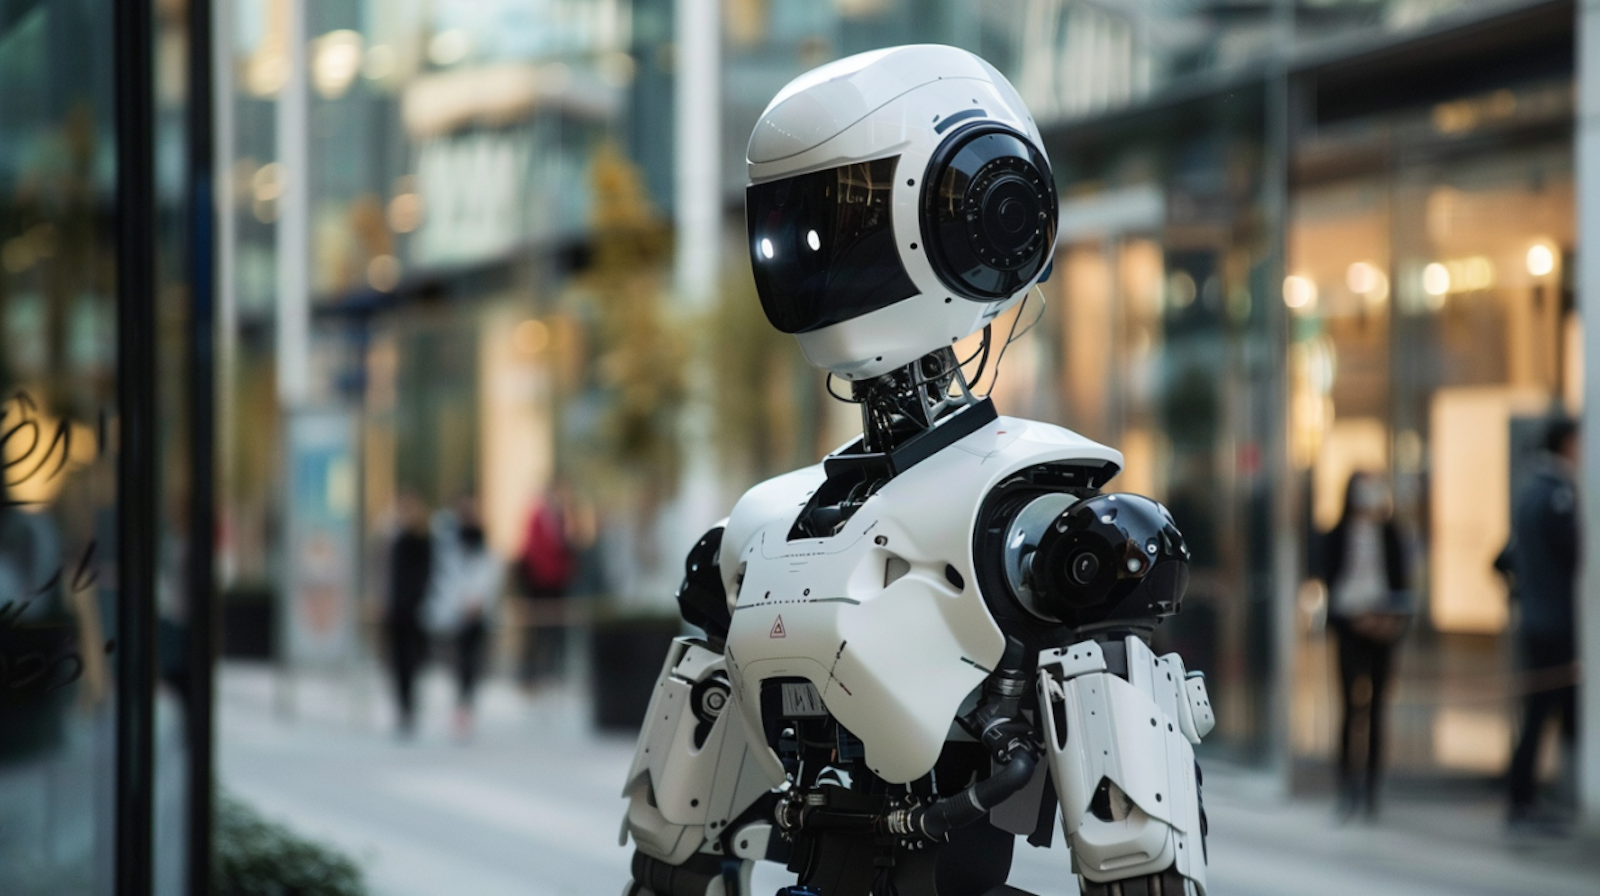 Ein fortschrittlicher humanoider Roboter auf einem belebten Gehweg in der Stadt, mit einem glatten weißen Körper und einem schwarzen Visier, ähnlich einem futuristischen Helm. Das Bild spiegelt die fortschreitende Integration von Robotern in alltägliche urbane Umgebungen wider